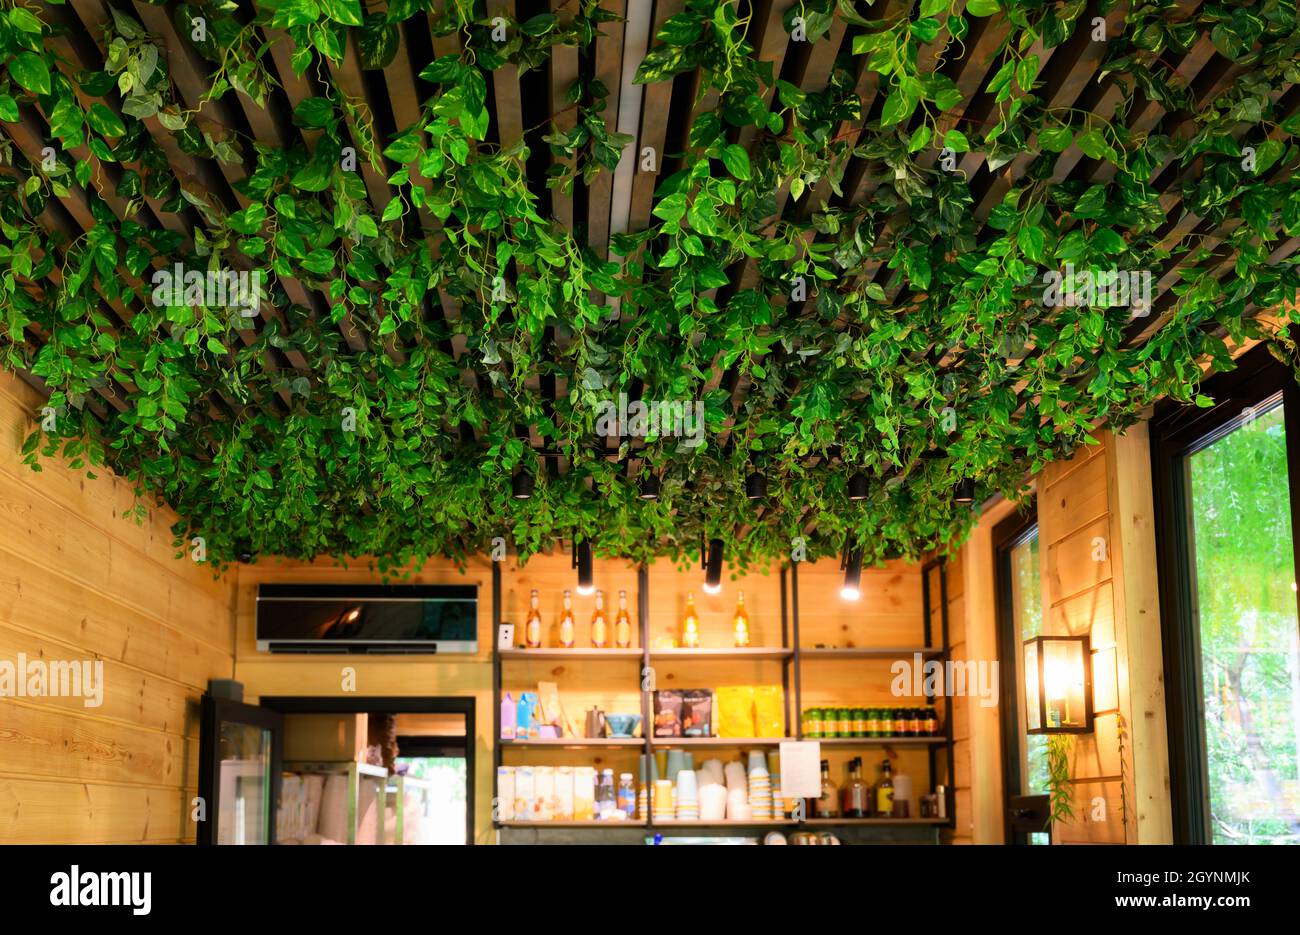 Intérieur avec aménagement paysager du plafond dans le café et la maison, jardin vertical à l'intérieur de la boutique.Conception avec plantes vertes à l'intérieur.Aménagement moderne du bureau ou Banque D'Images